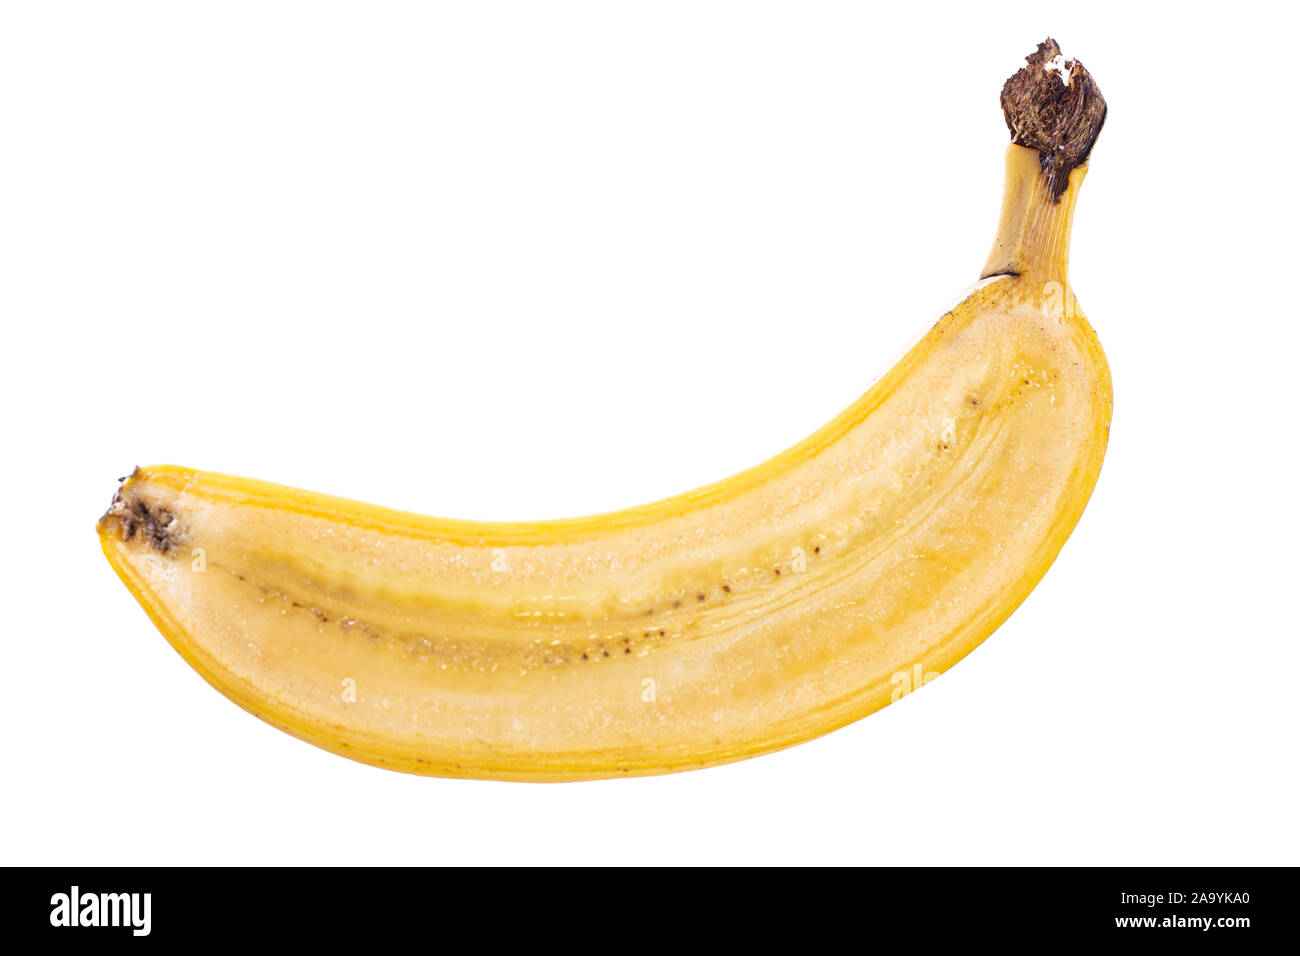 Längs geschnitten halfed gelbe Banane Obst mit Schale auf weißem Hintergrund Stockfoto